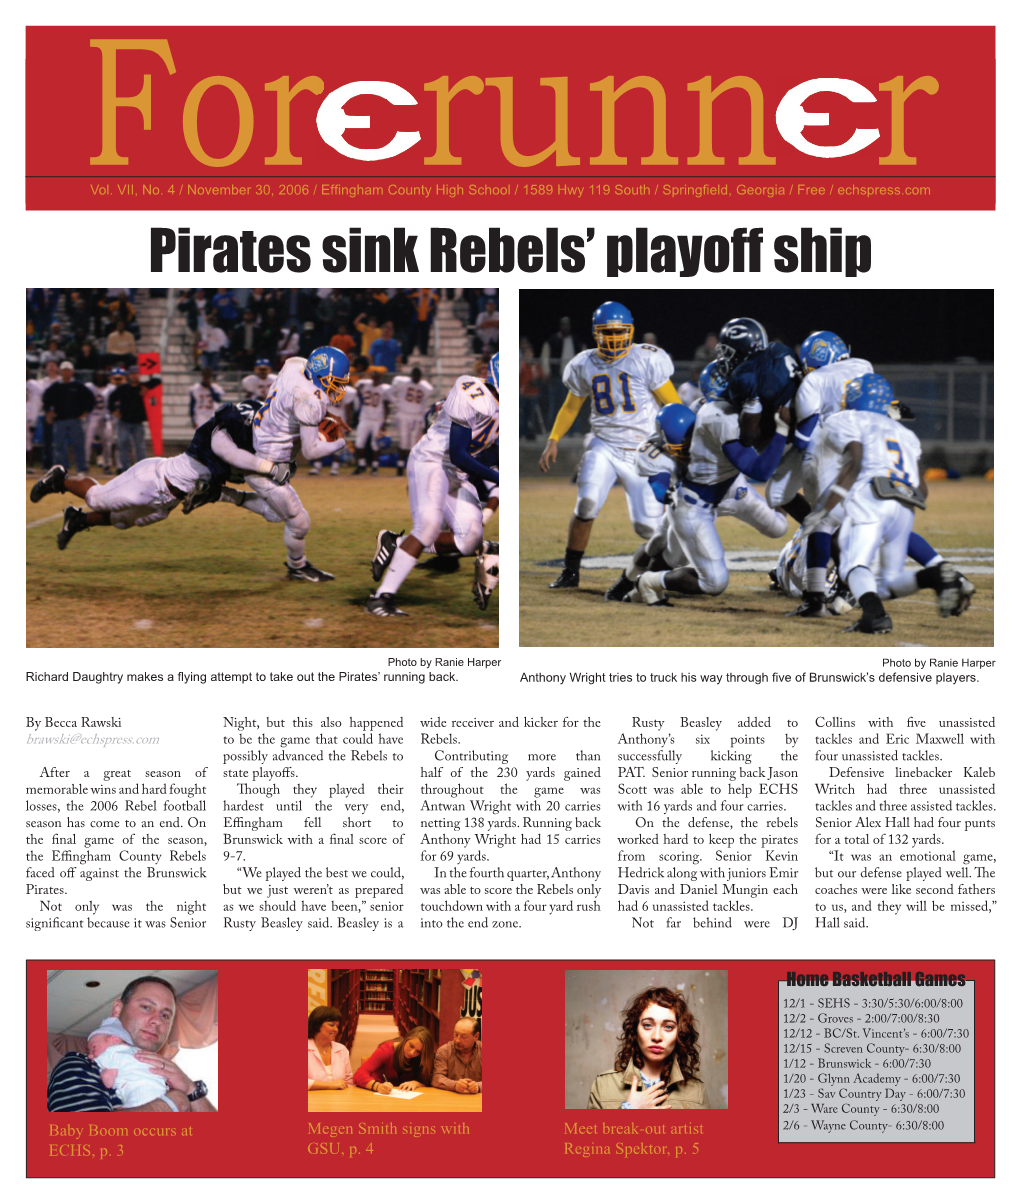 Pirates Sink Rebels' Playoff Ship